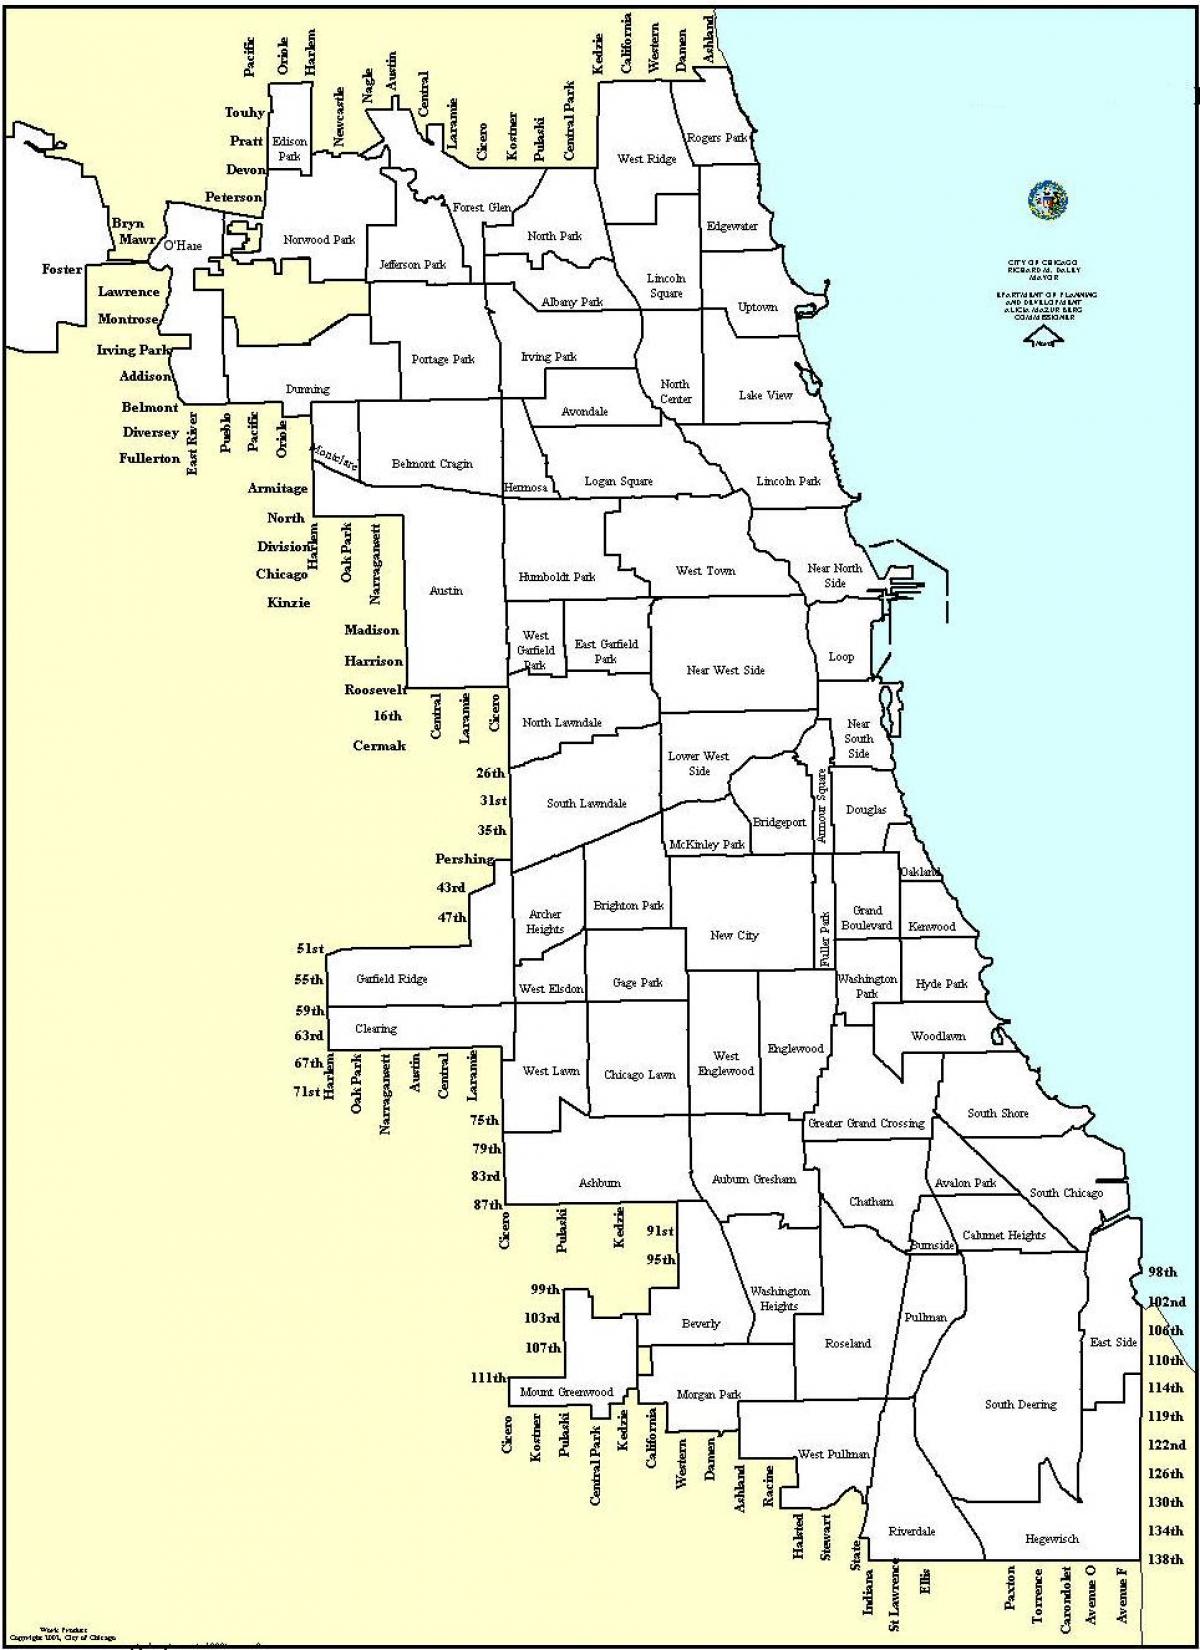 zoning नक्शा शिकागो